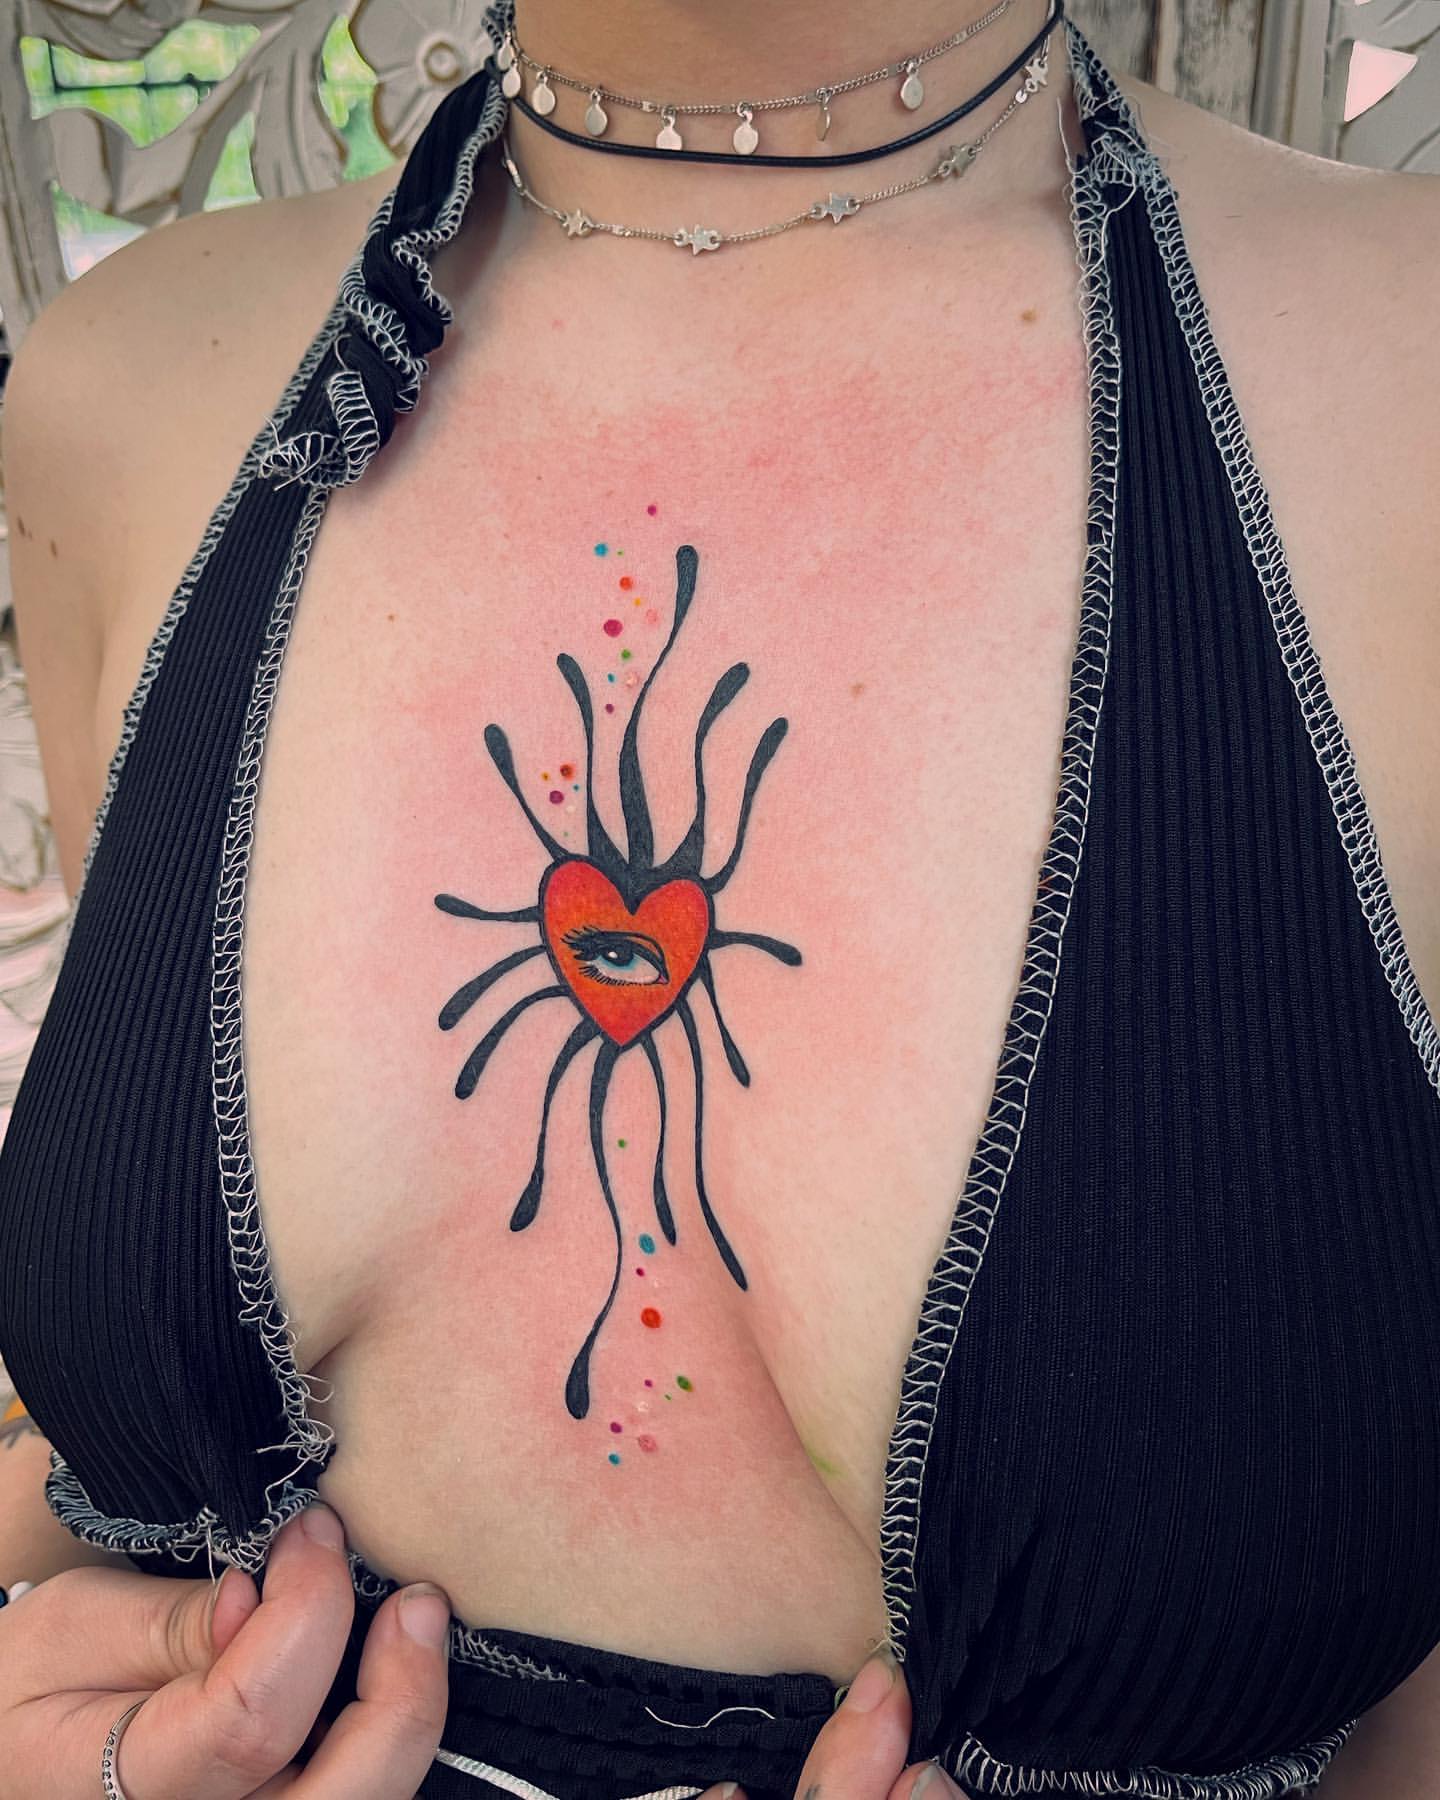 Underboob Tattoo, sternum tattoo